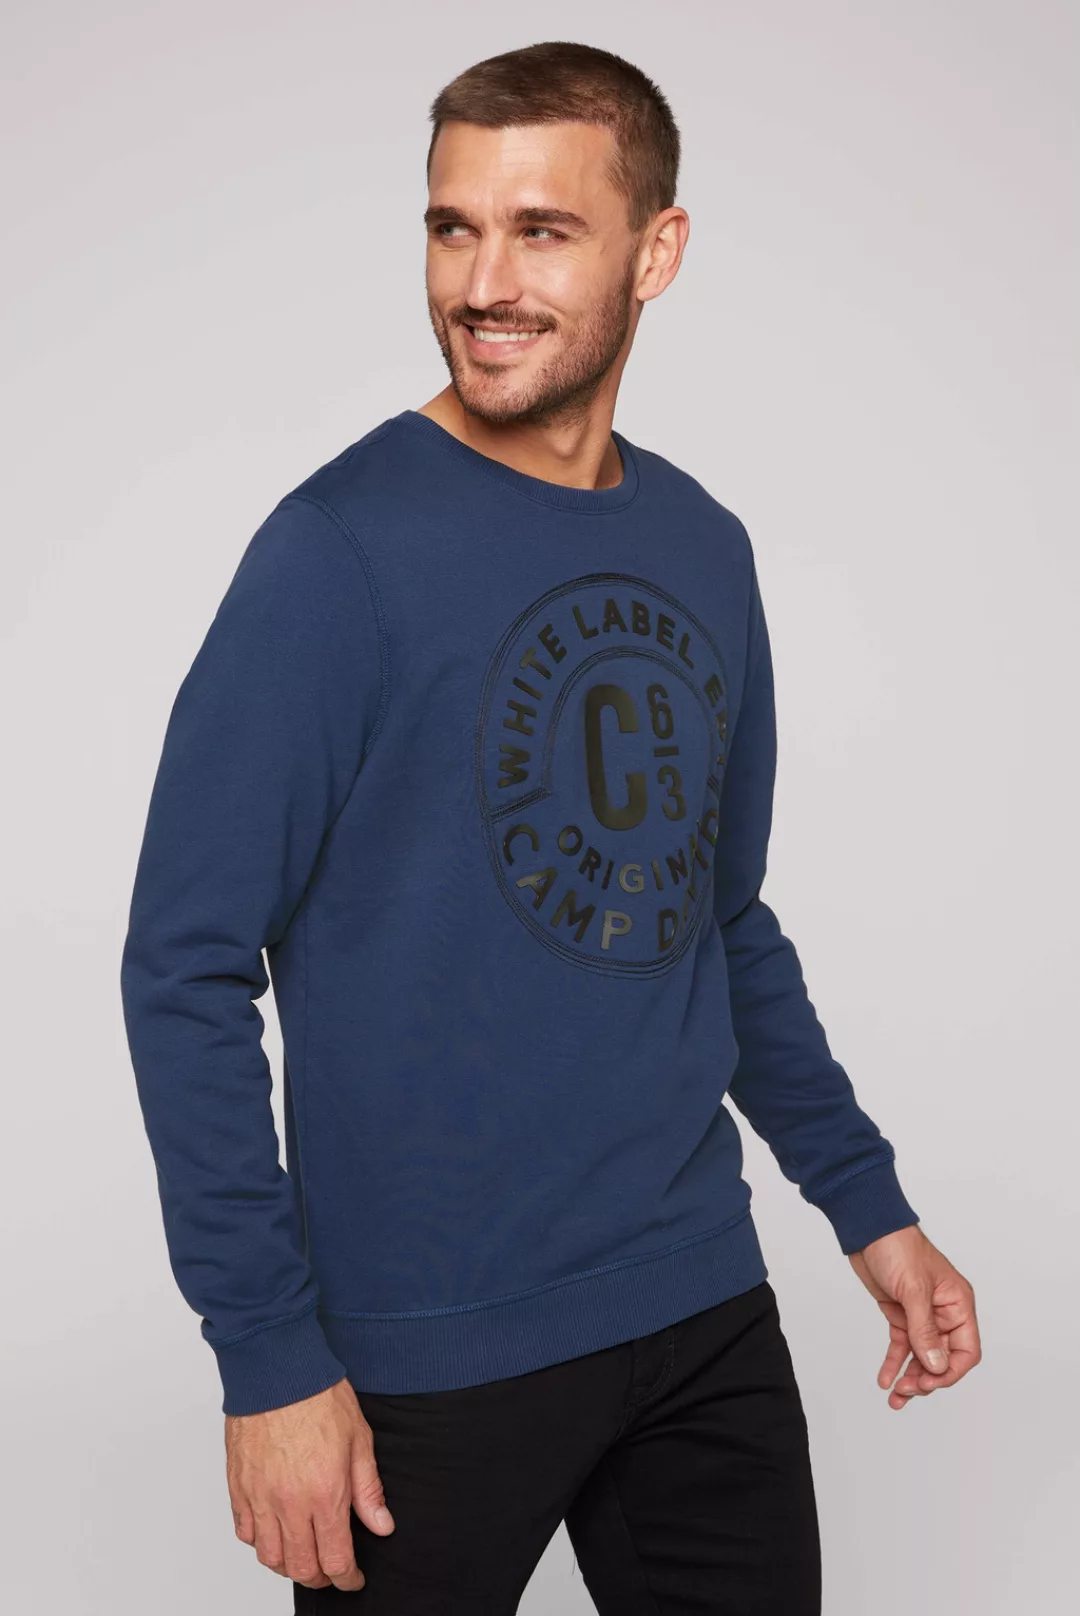 CAMP DAVID Sweater günstig online kaufen